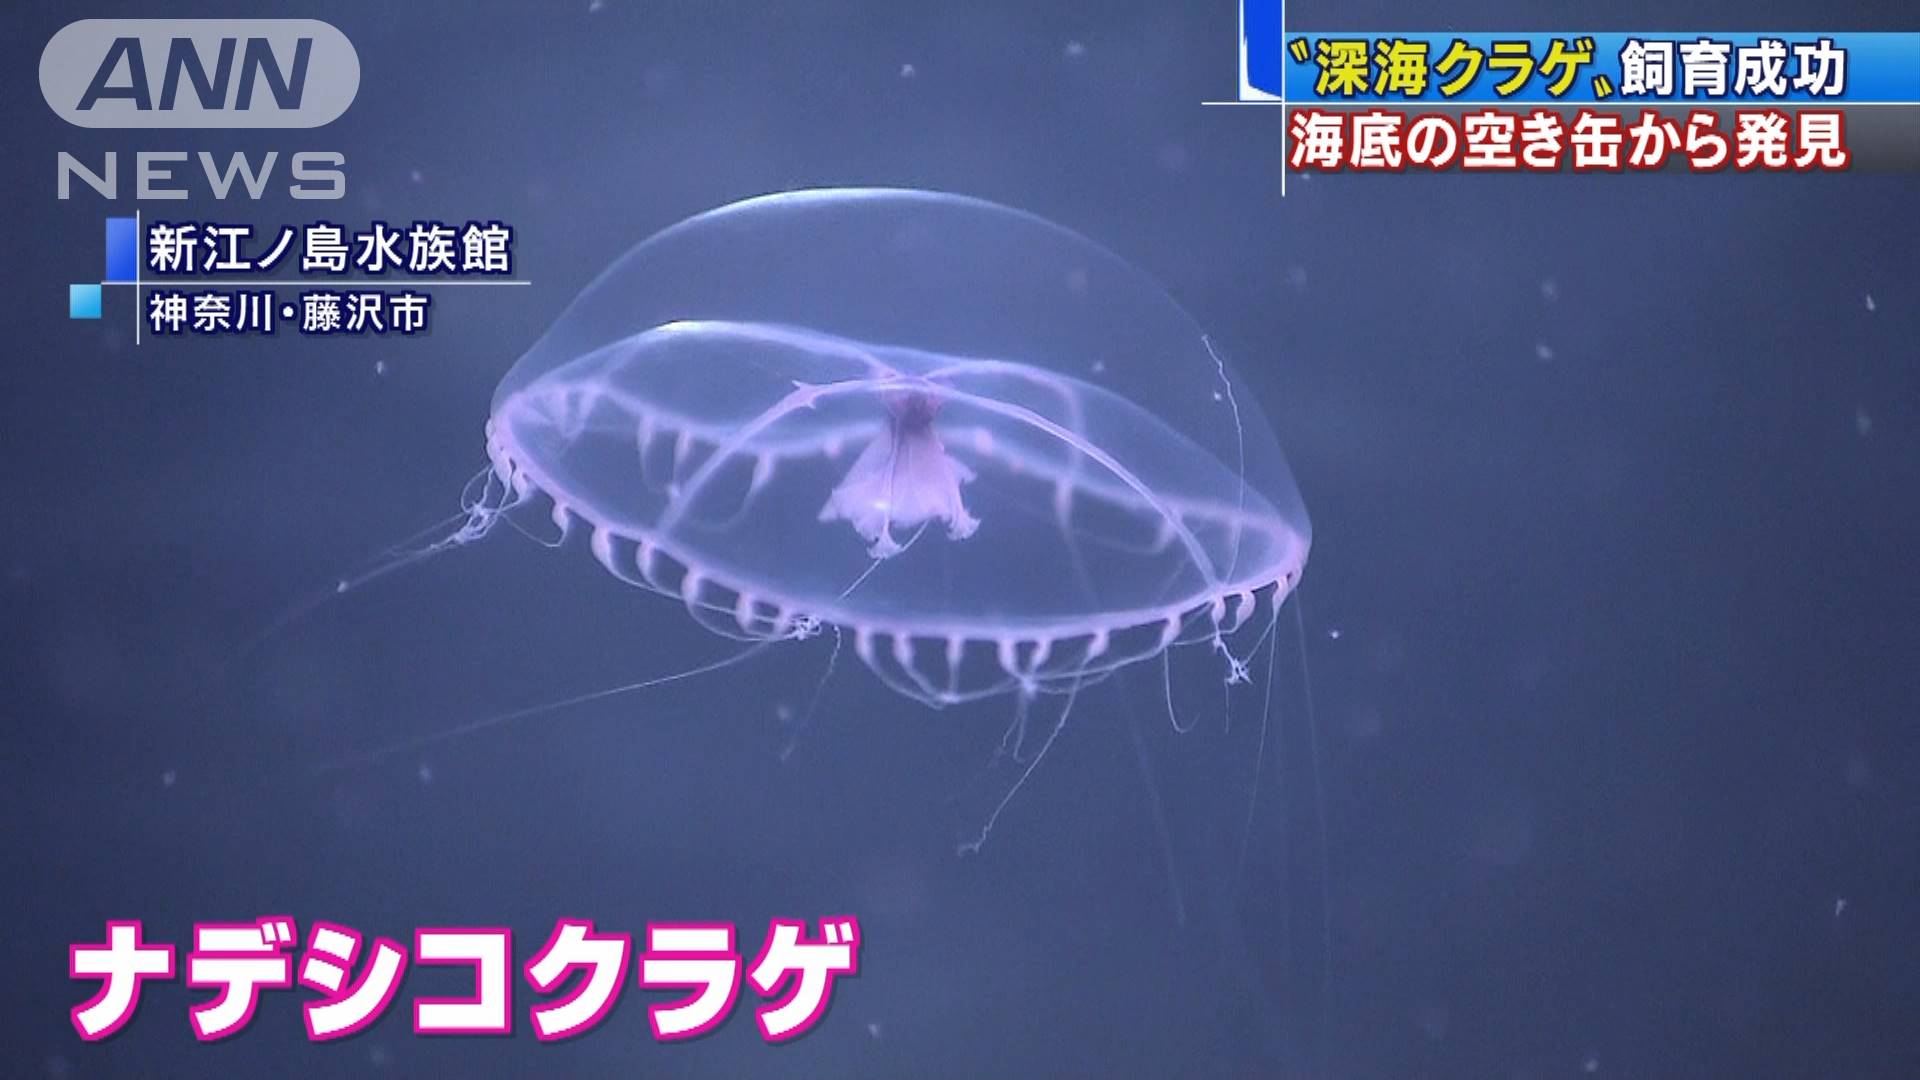 ナデシコクラゲの飼育成功 深海の空き缶から発見 テレ朝news テレビ朝日のニュースサイト